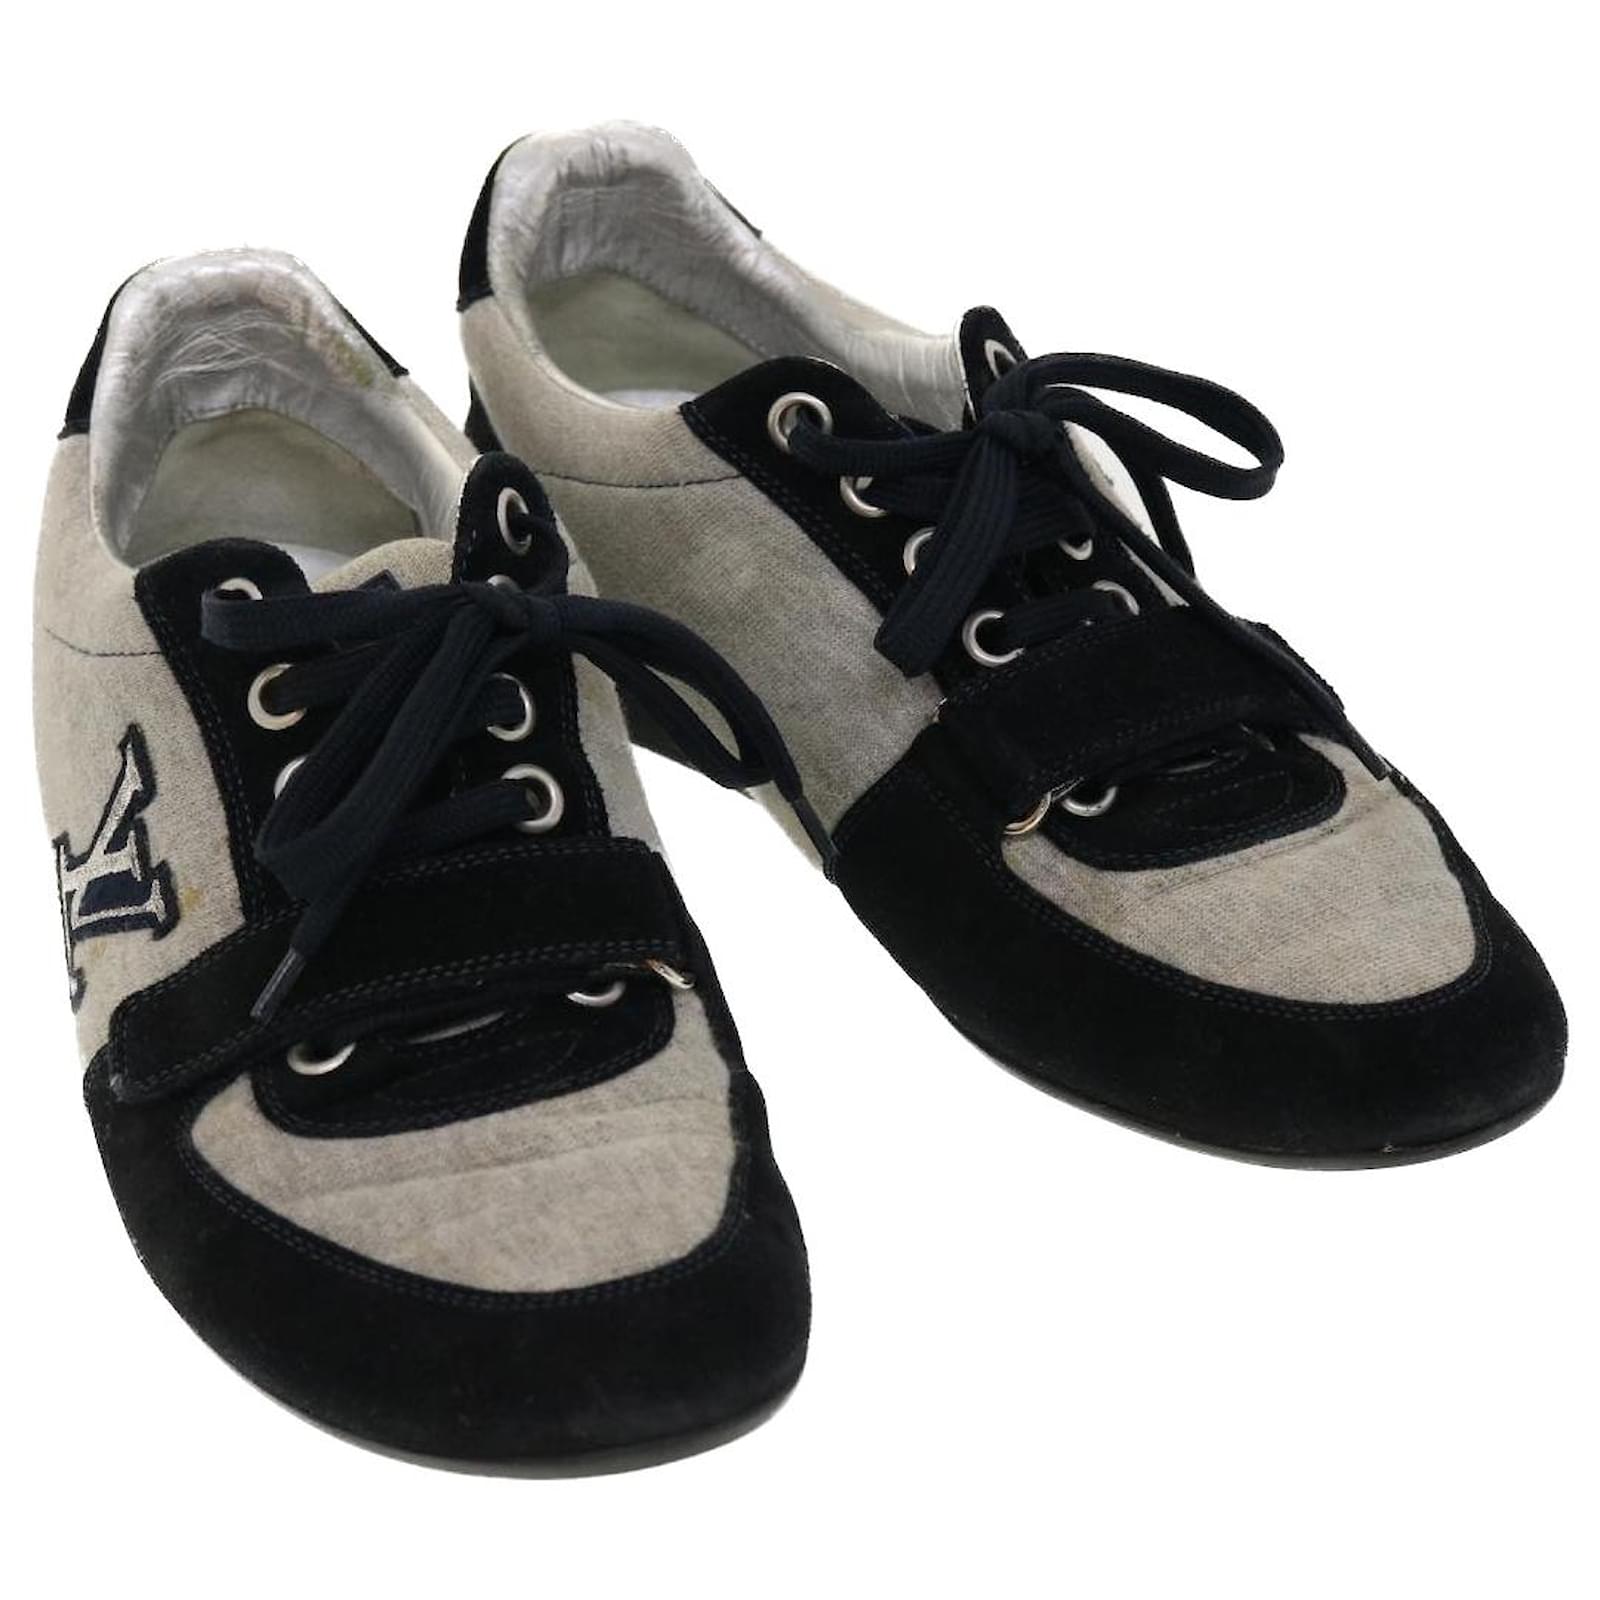 Louis Vuitton, Shoes, Original Louis Vuitton Sneakers